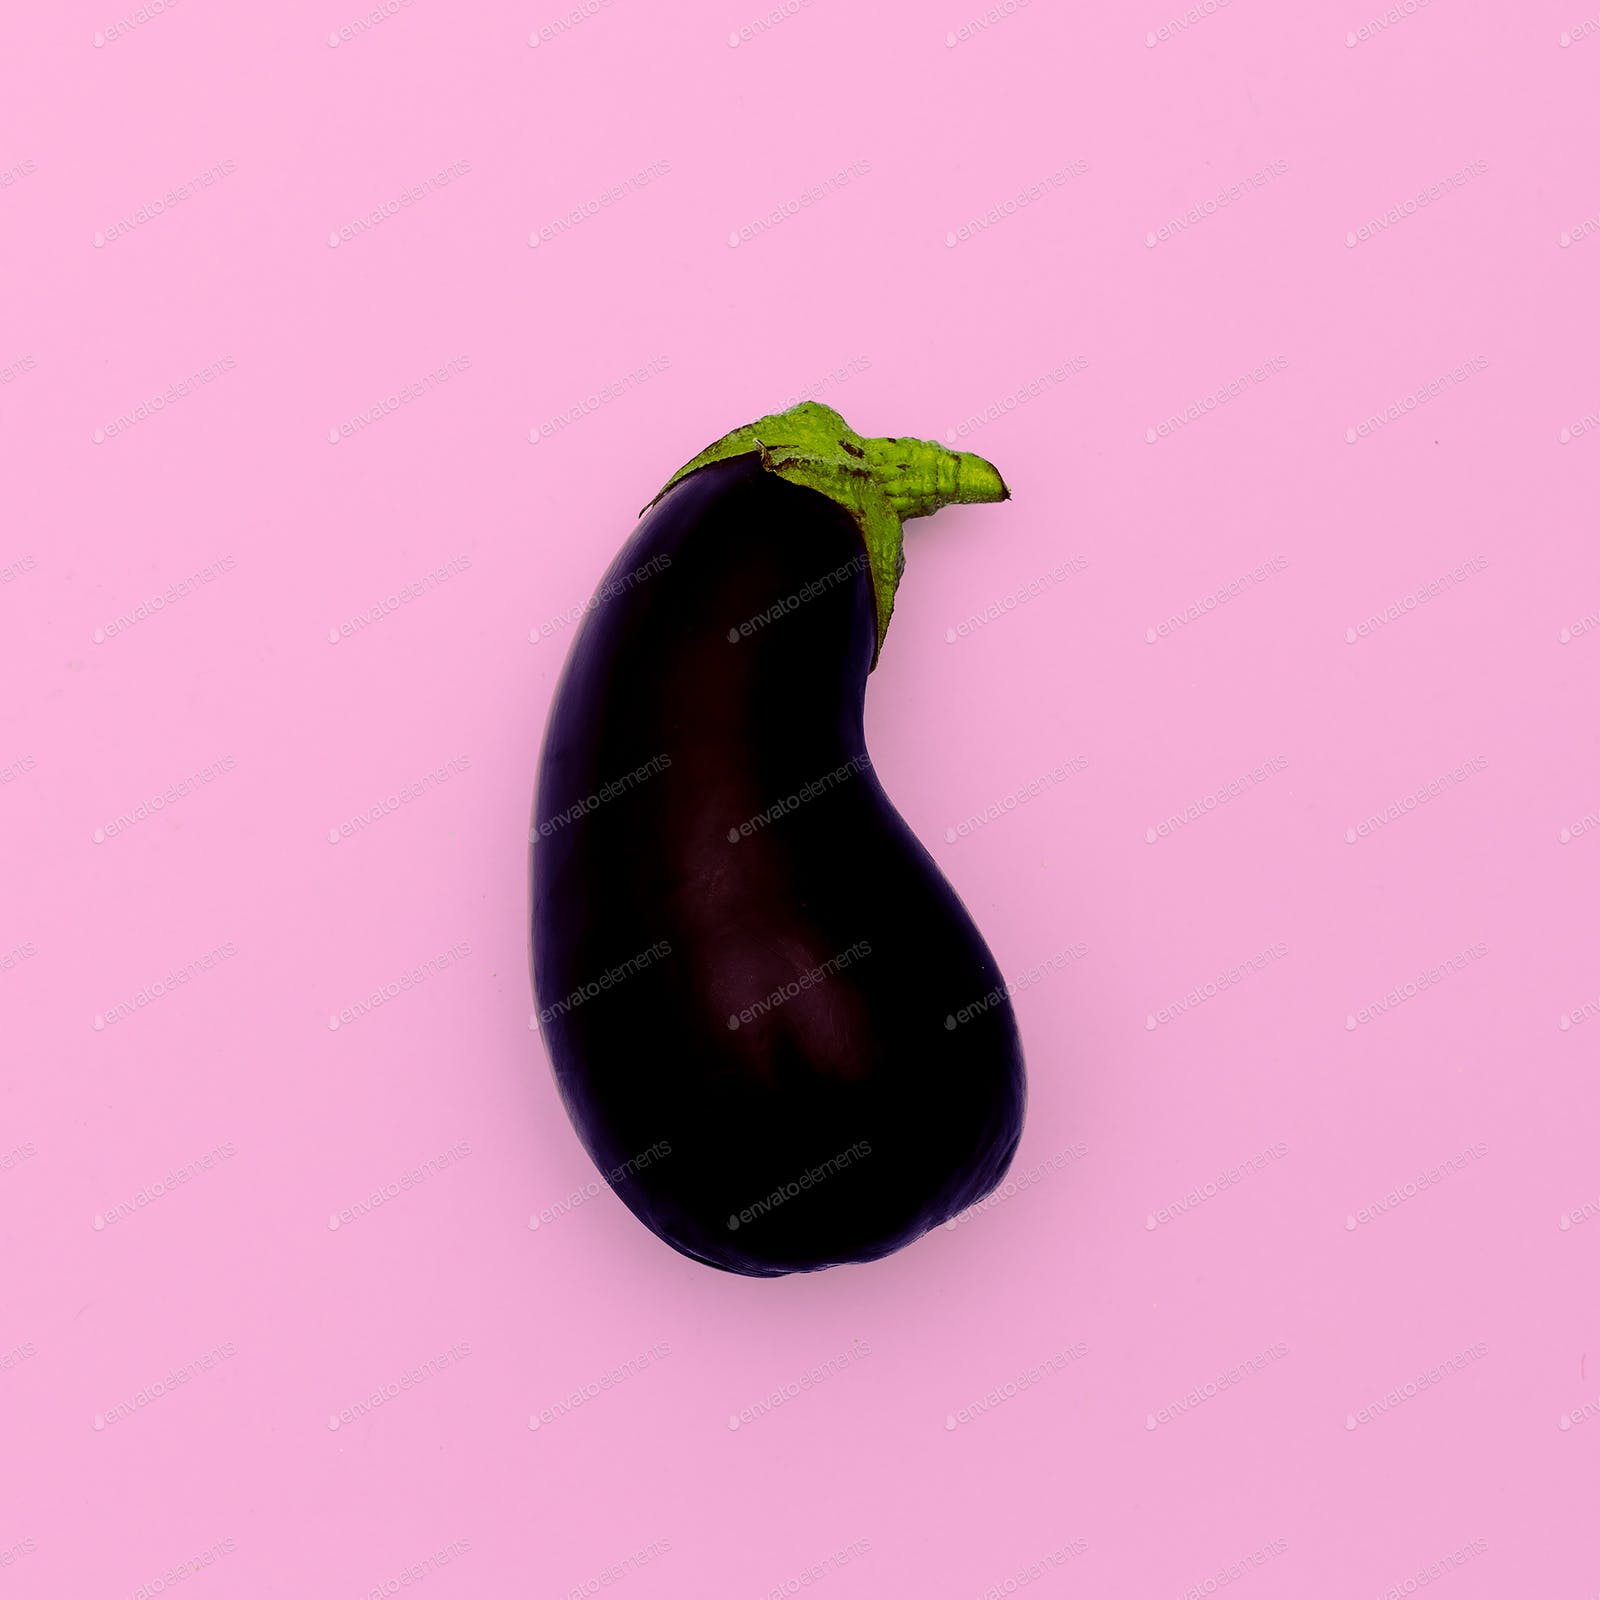 Eggplant. Raw food. Minimal design art photo by EvgeniyaPorechenskaya on Envato Elements